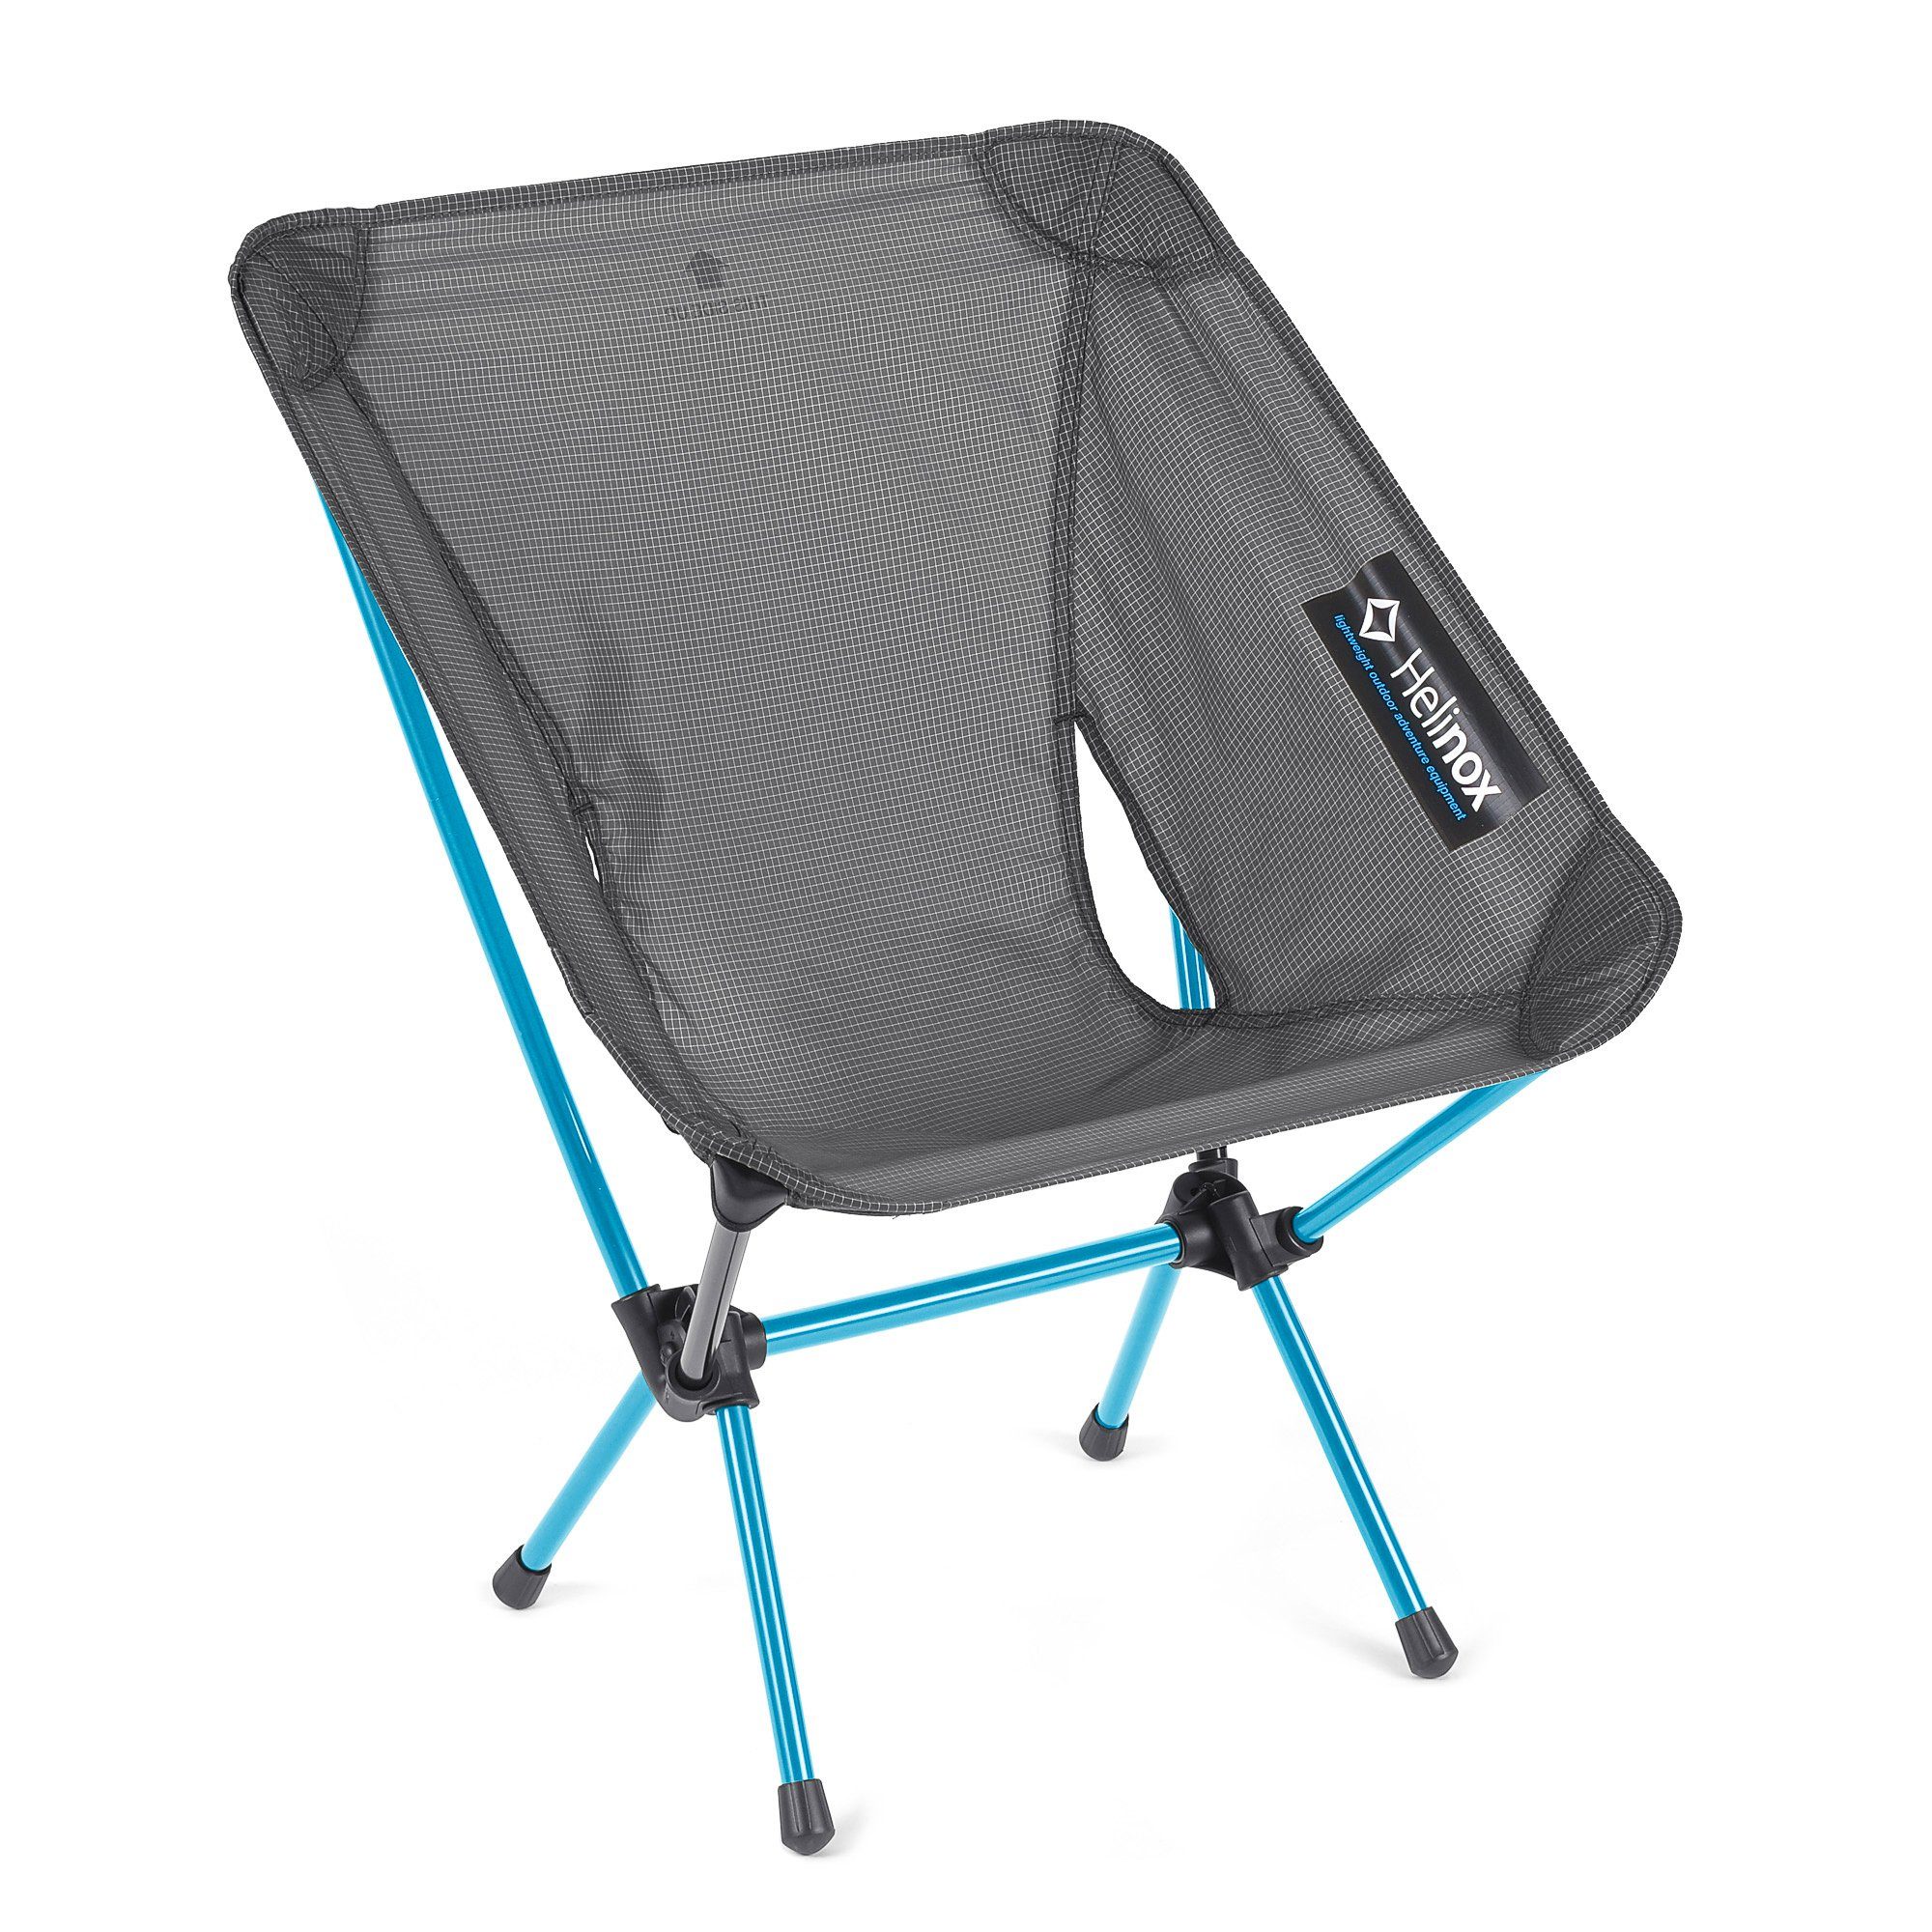 Helinox Campingstuhl Helinox Chair Zero L (Gewicht 0,66kg / max. 145kg)